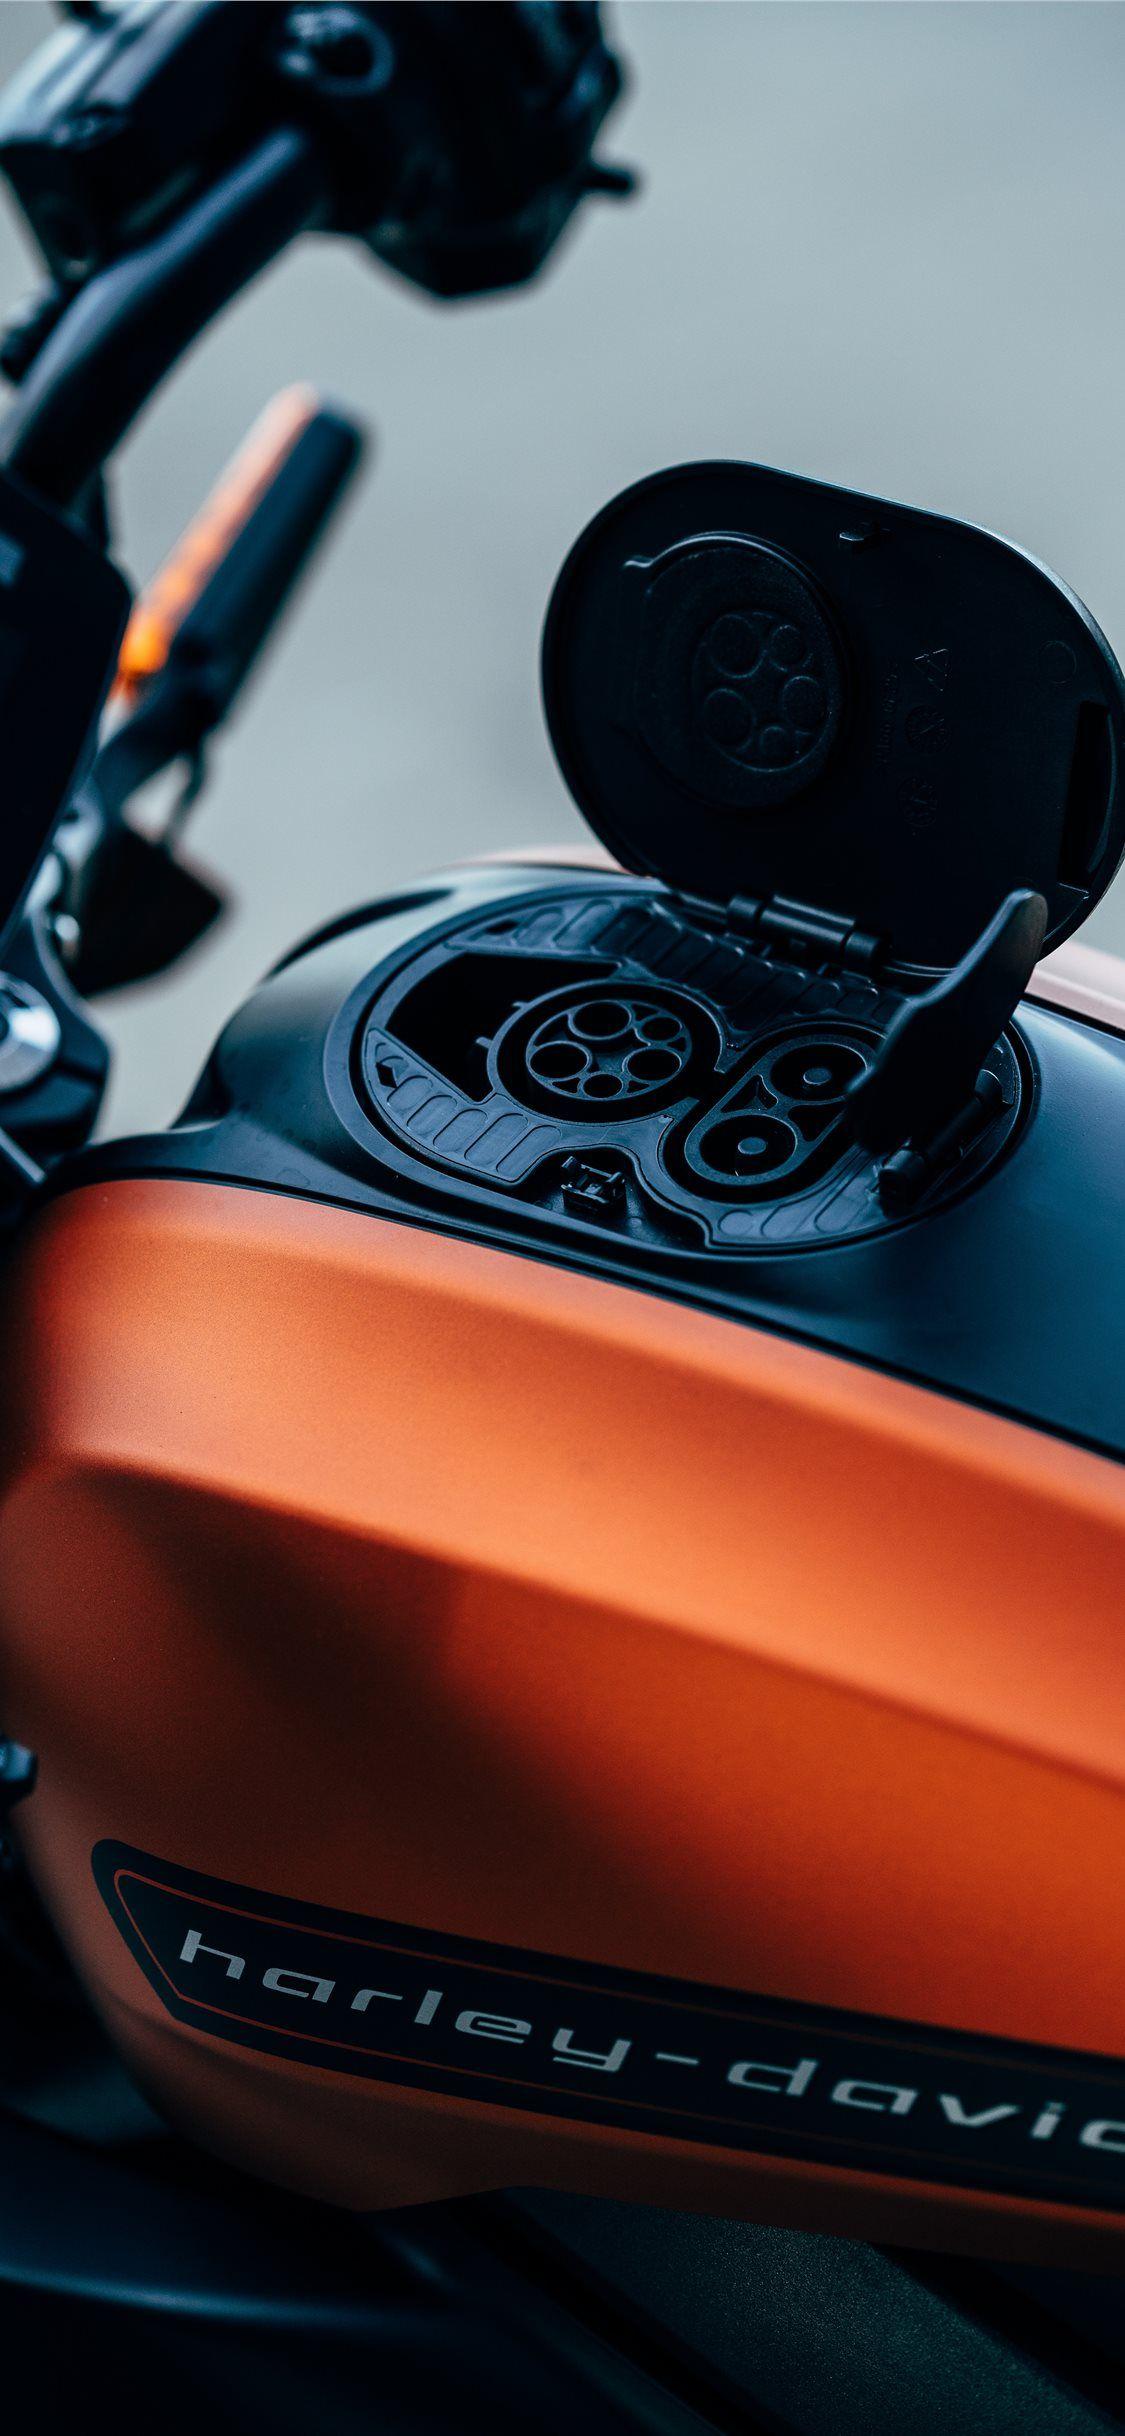 1125x2436 mô tô Harley Davidson màu cam và đen Hình nền iPhone X